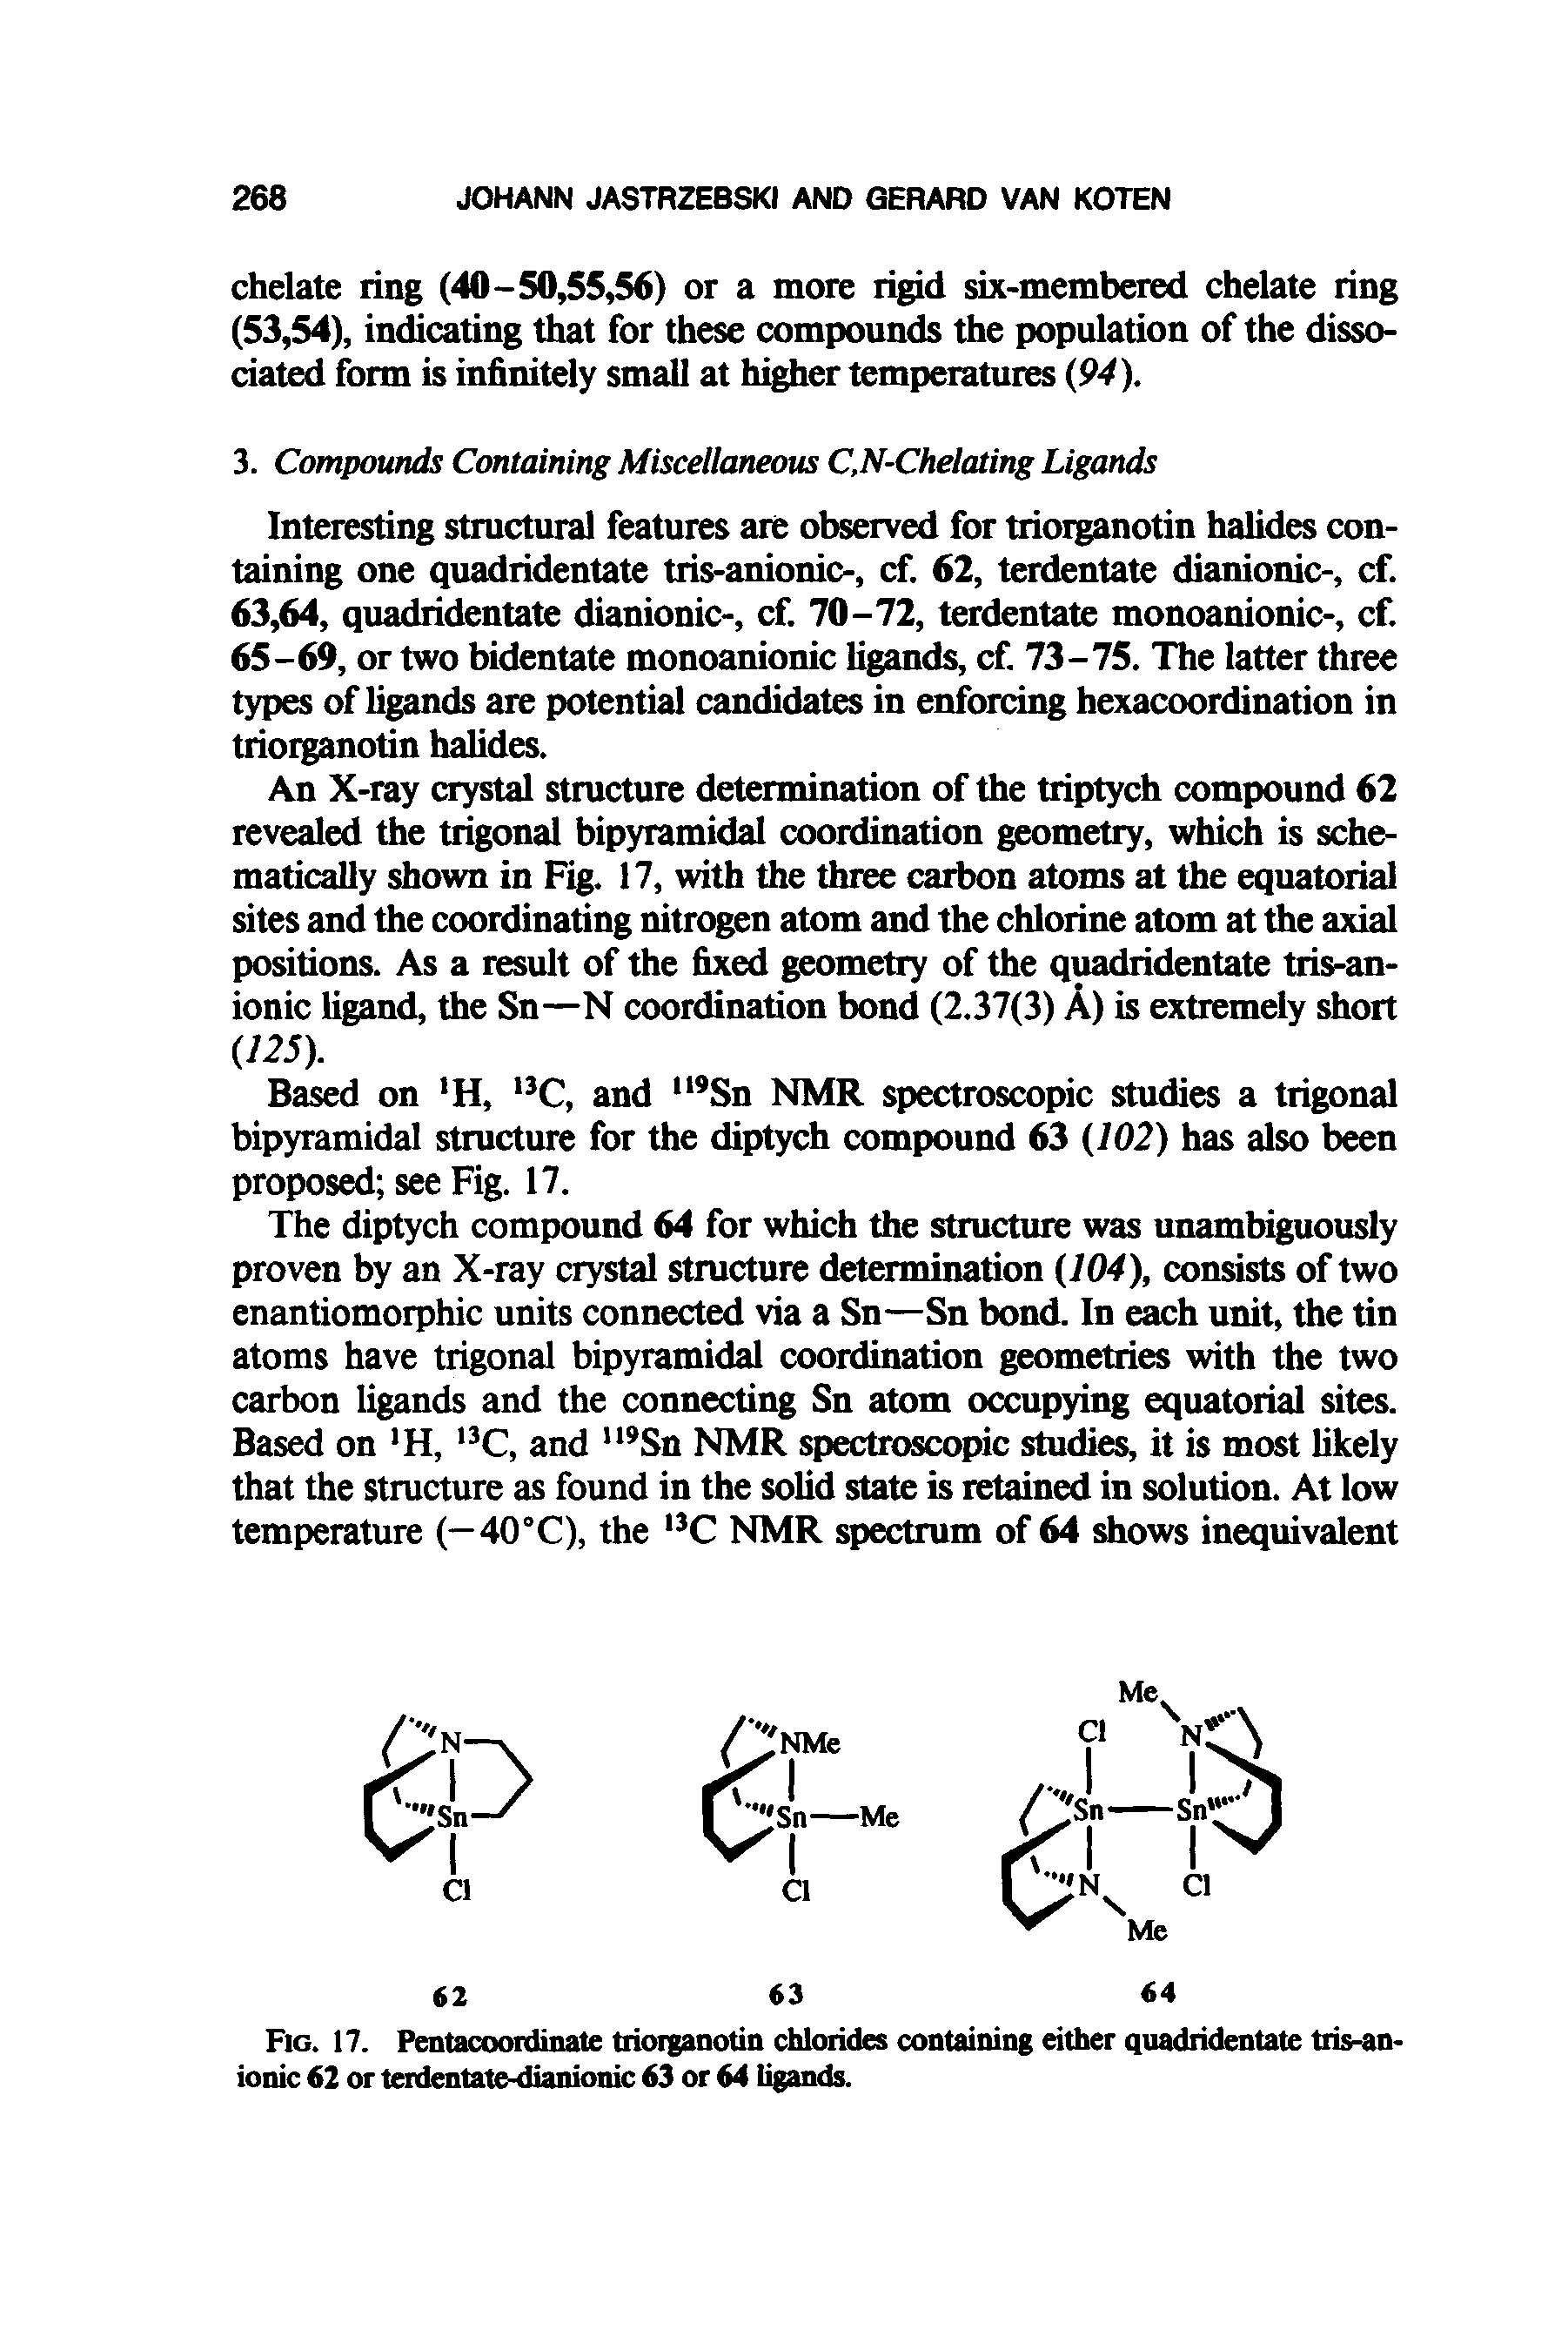 Fig. 17. Pentacoordinate triorganotin chlorides containing either quadridentate tris-anionic 62 or terdentate-dianionic 63 or 64 ligands.